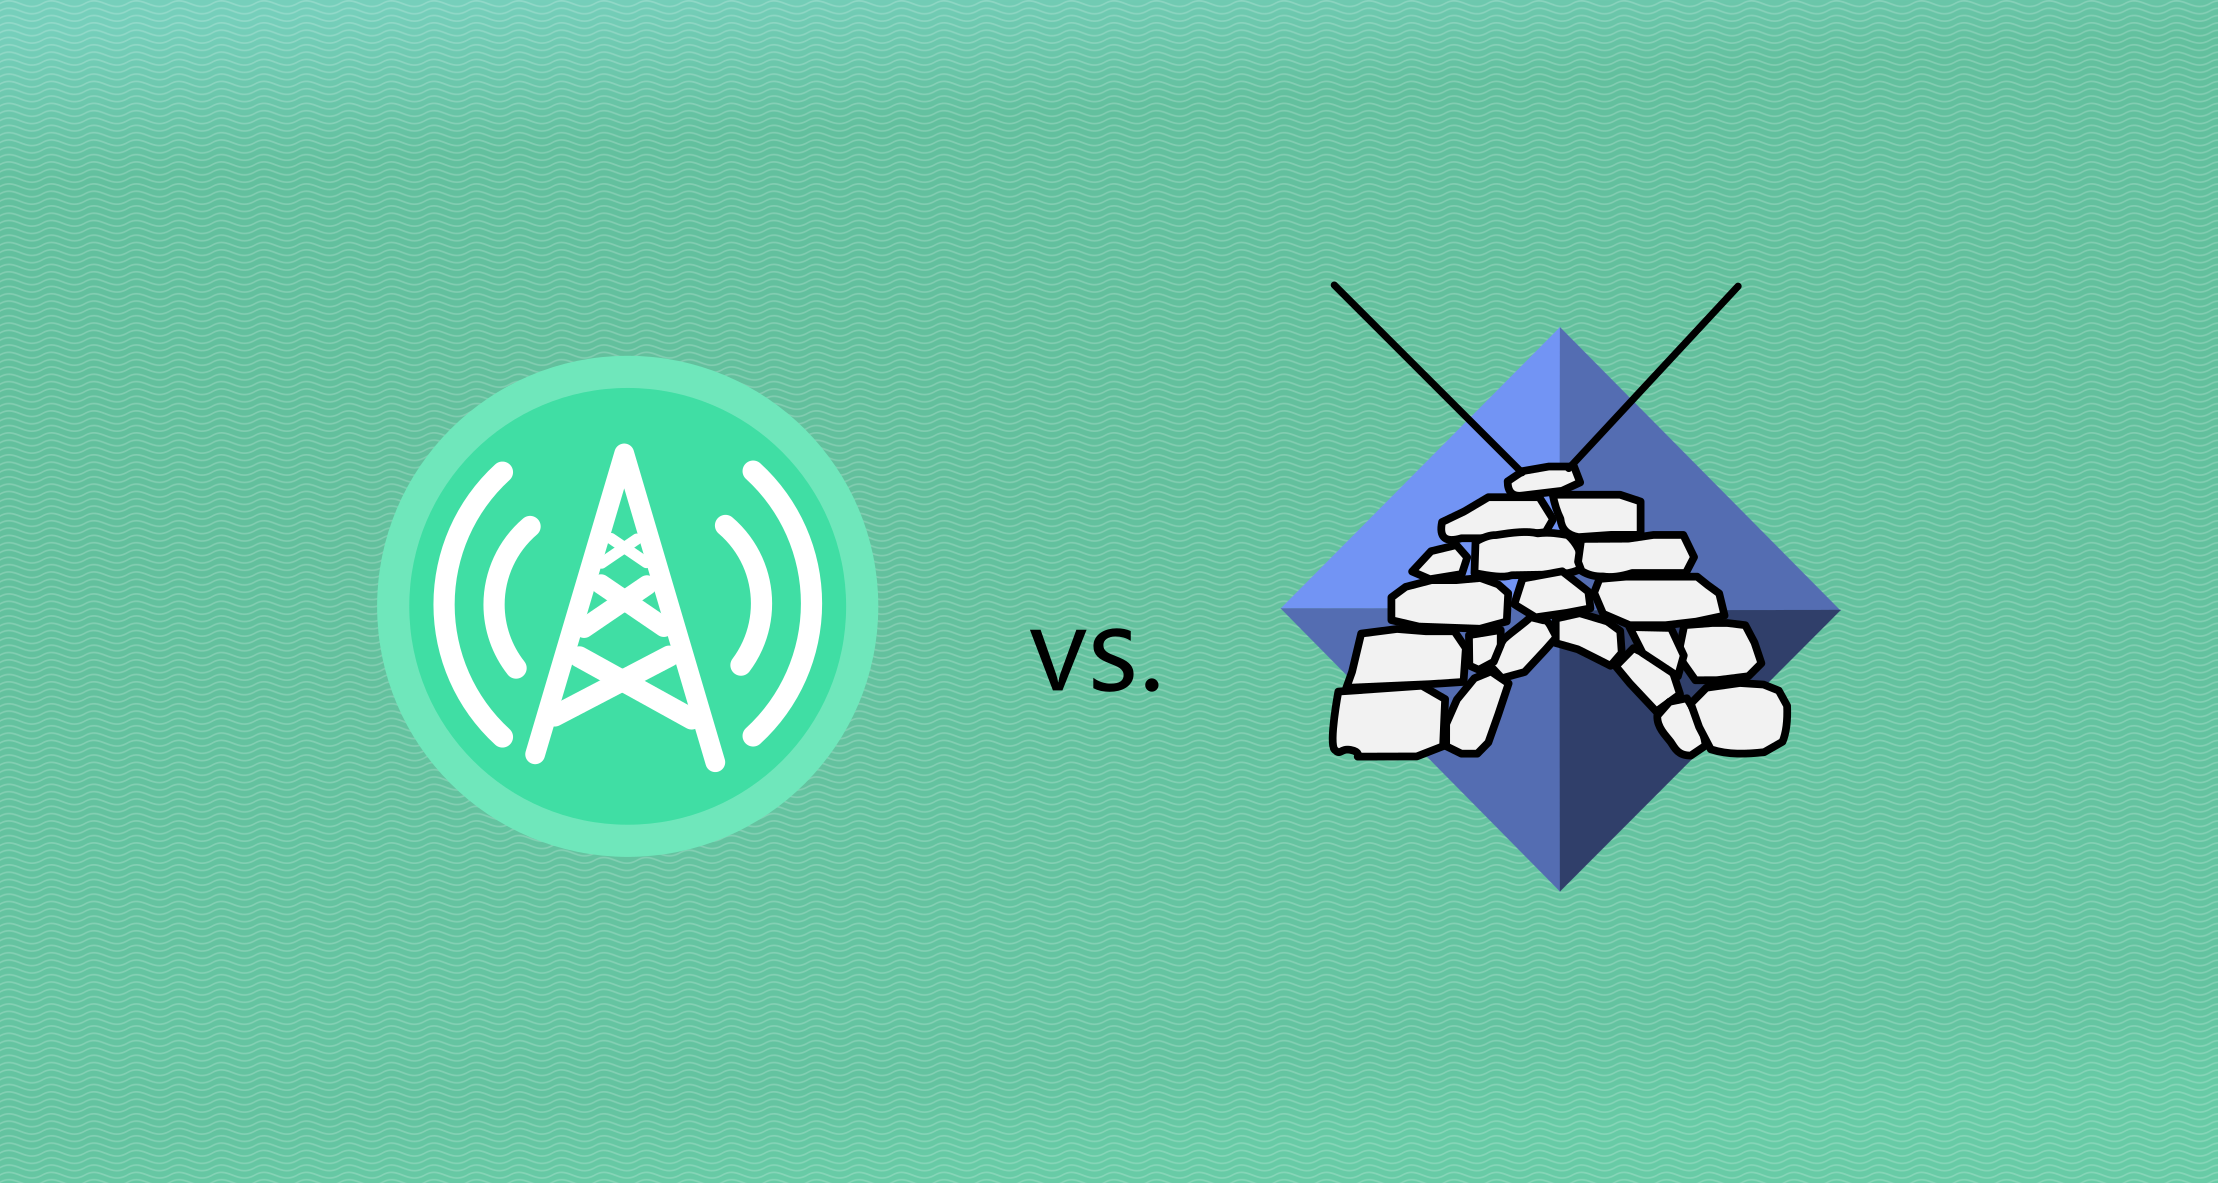 Radio Mast vs. Icecast